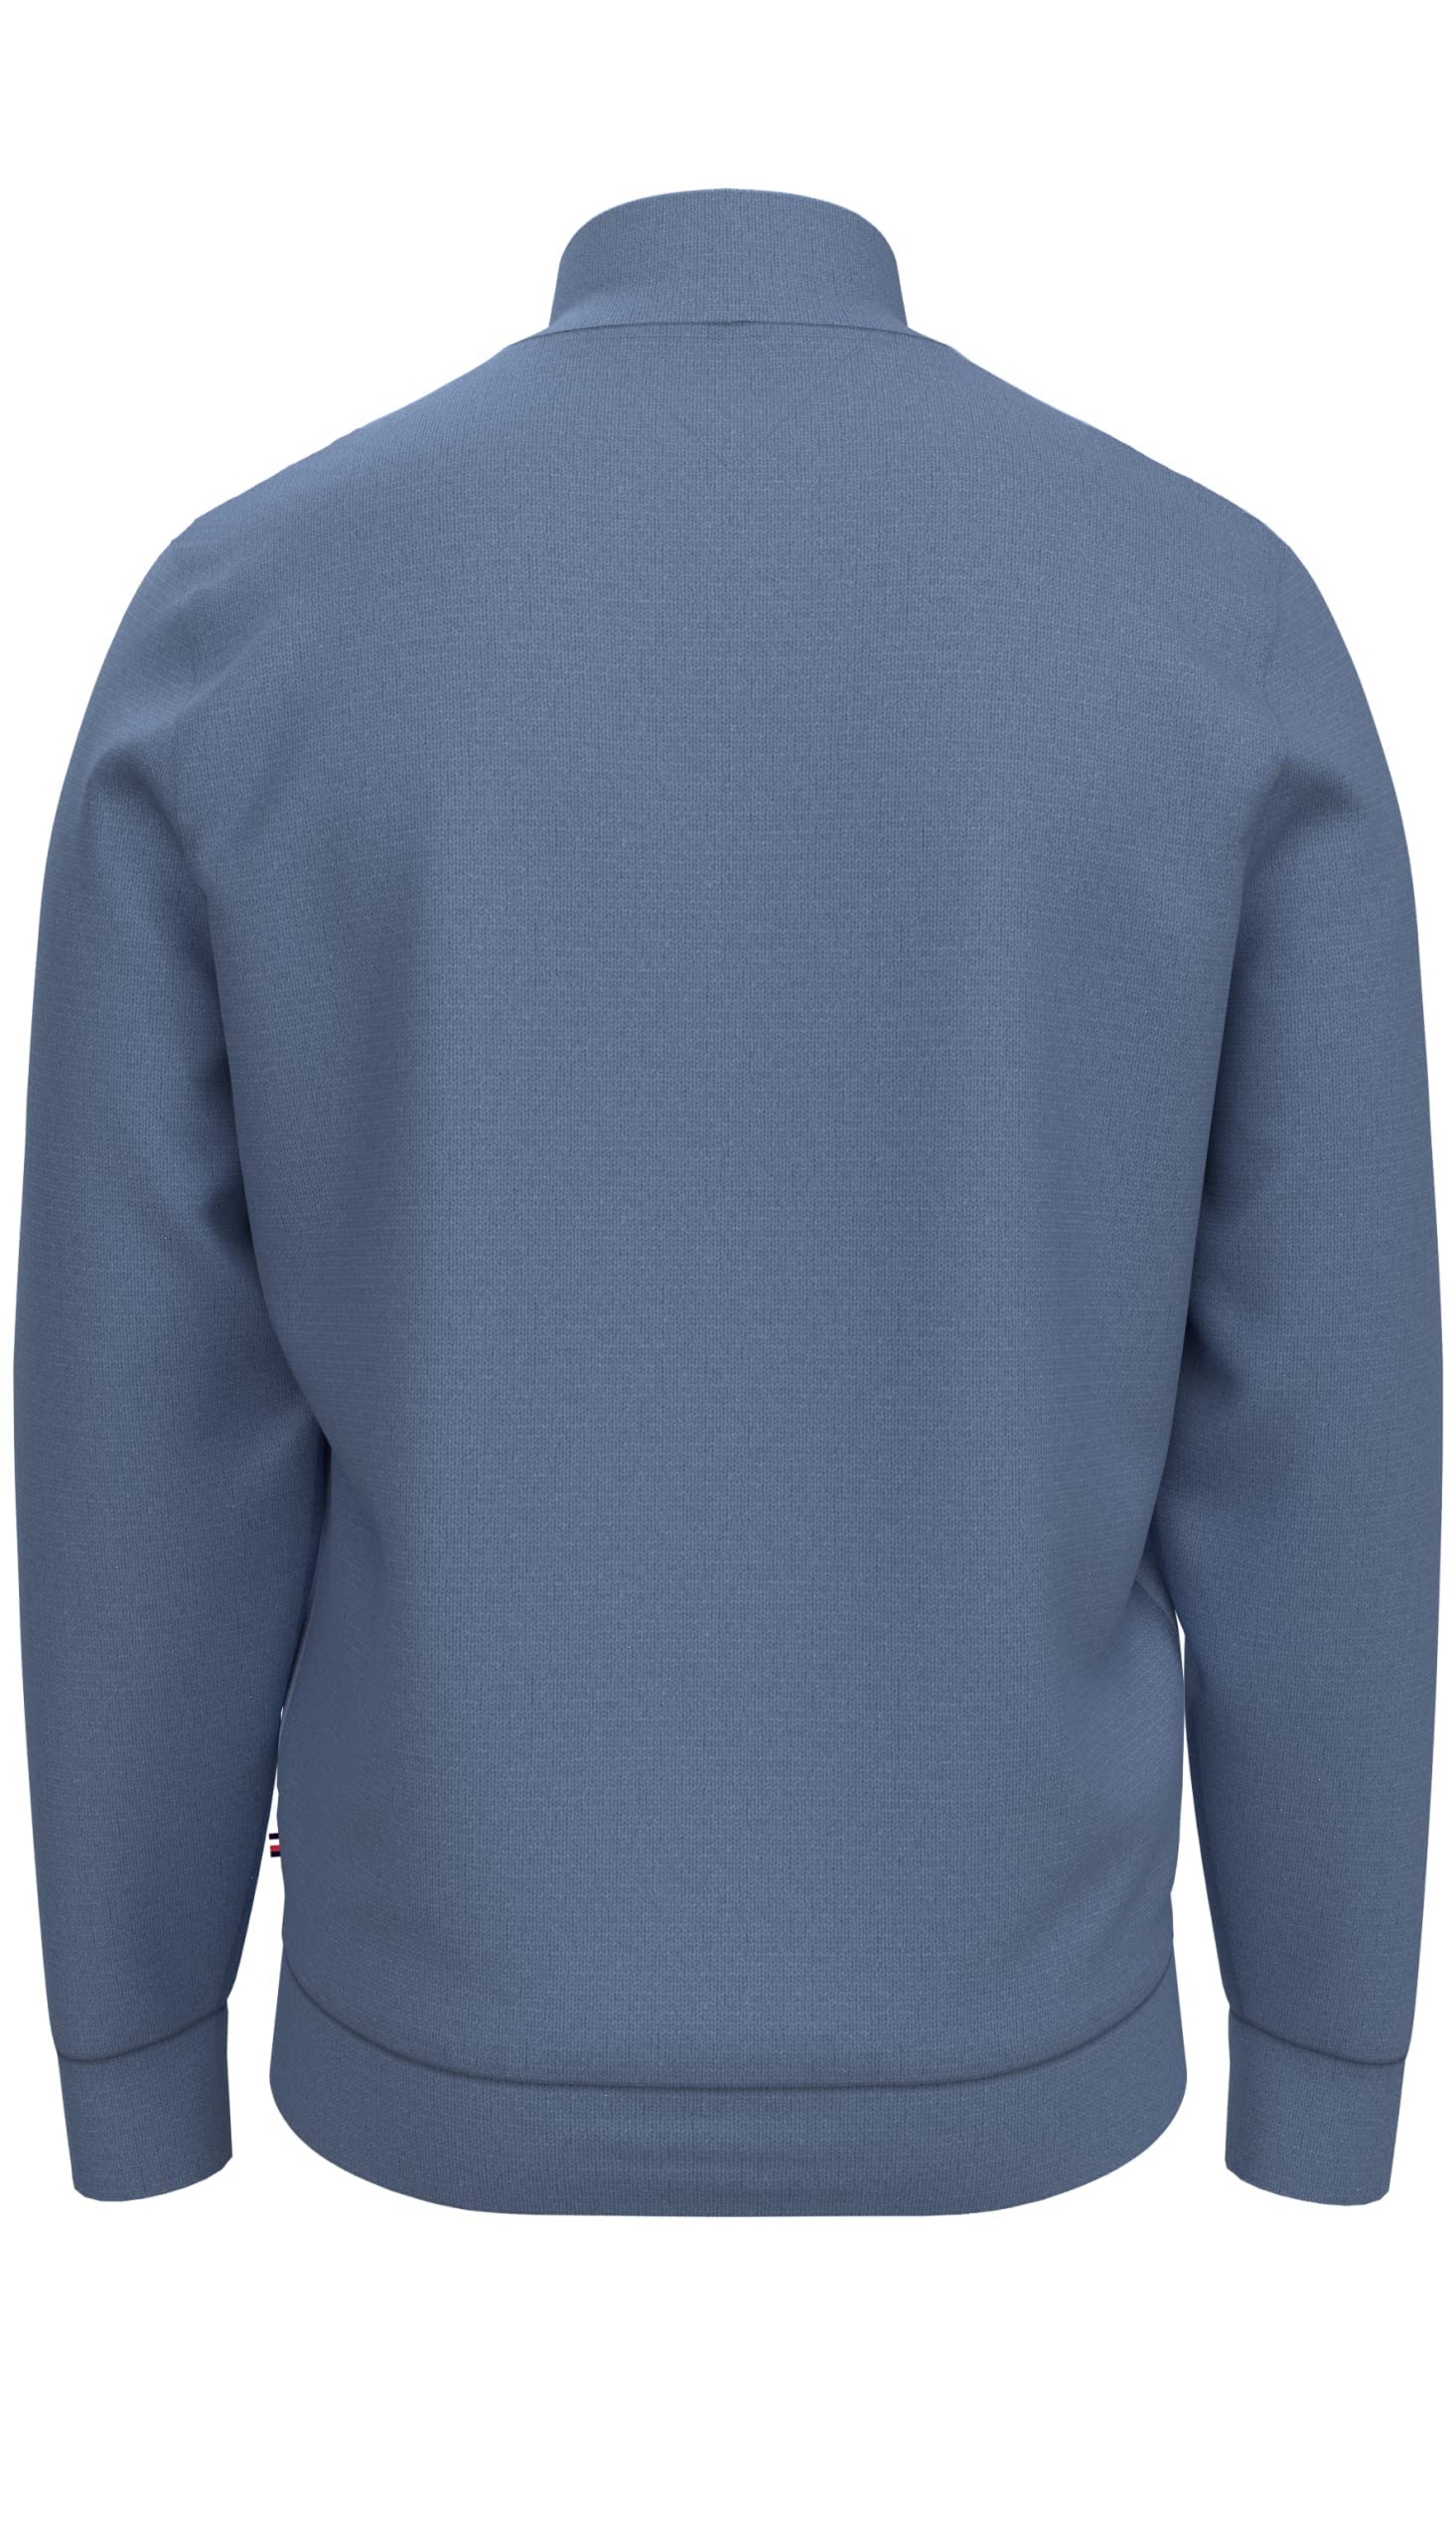 Tommy Hilfiger Men's Long Sleeve Fleece Quarter Zip Pullover Sweatshirt